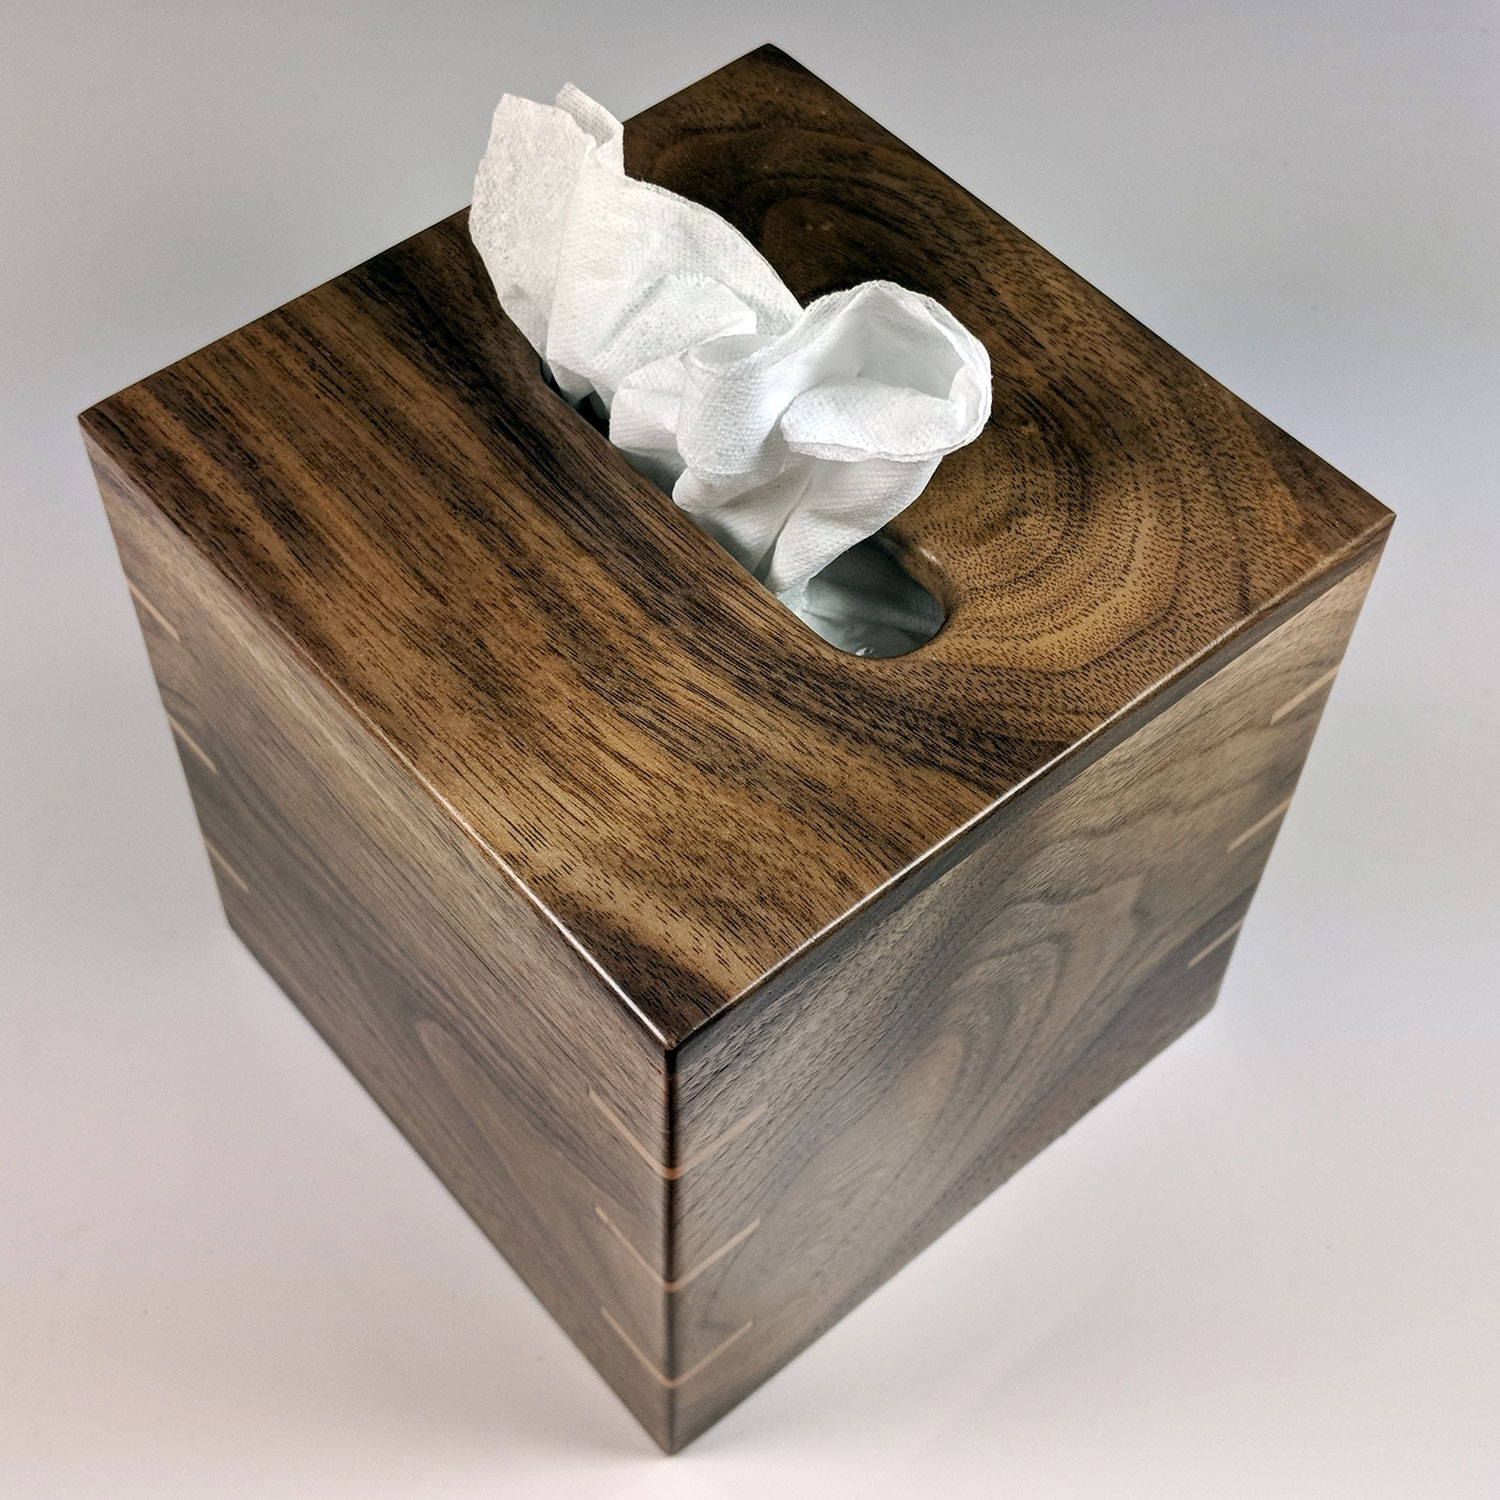 tissue box small